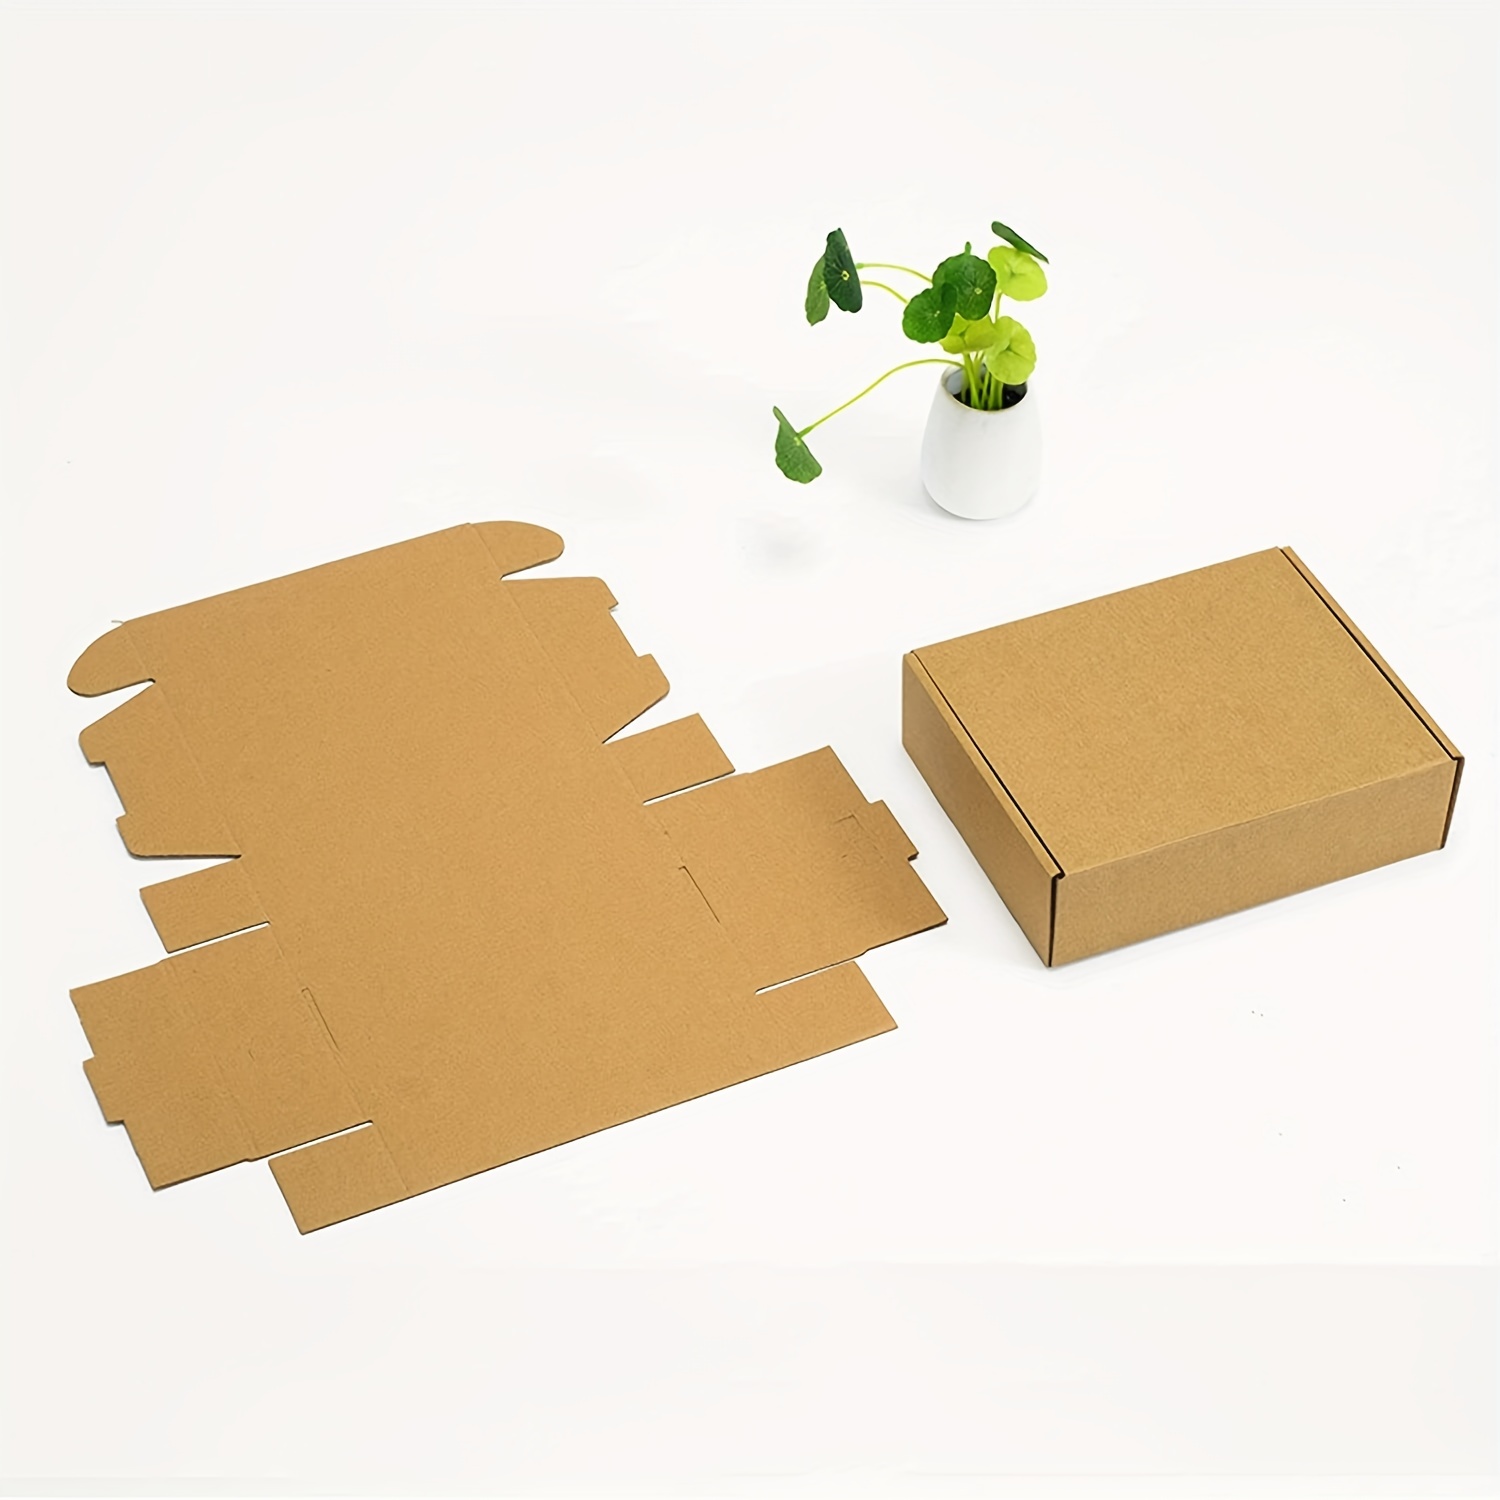 Cajas de cartón 460x340x260mm I Caja de Carton Simple I Dto. Bienvenida